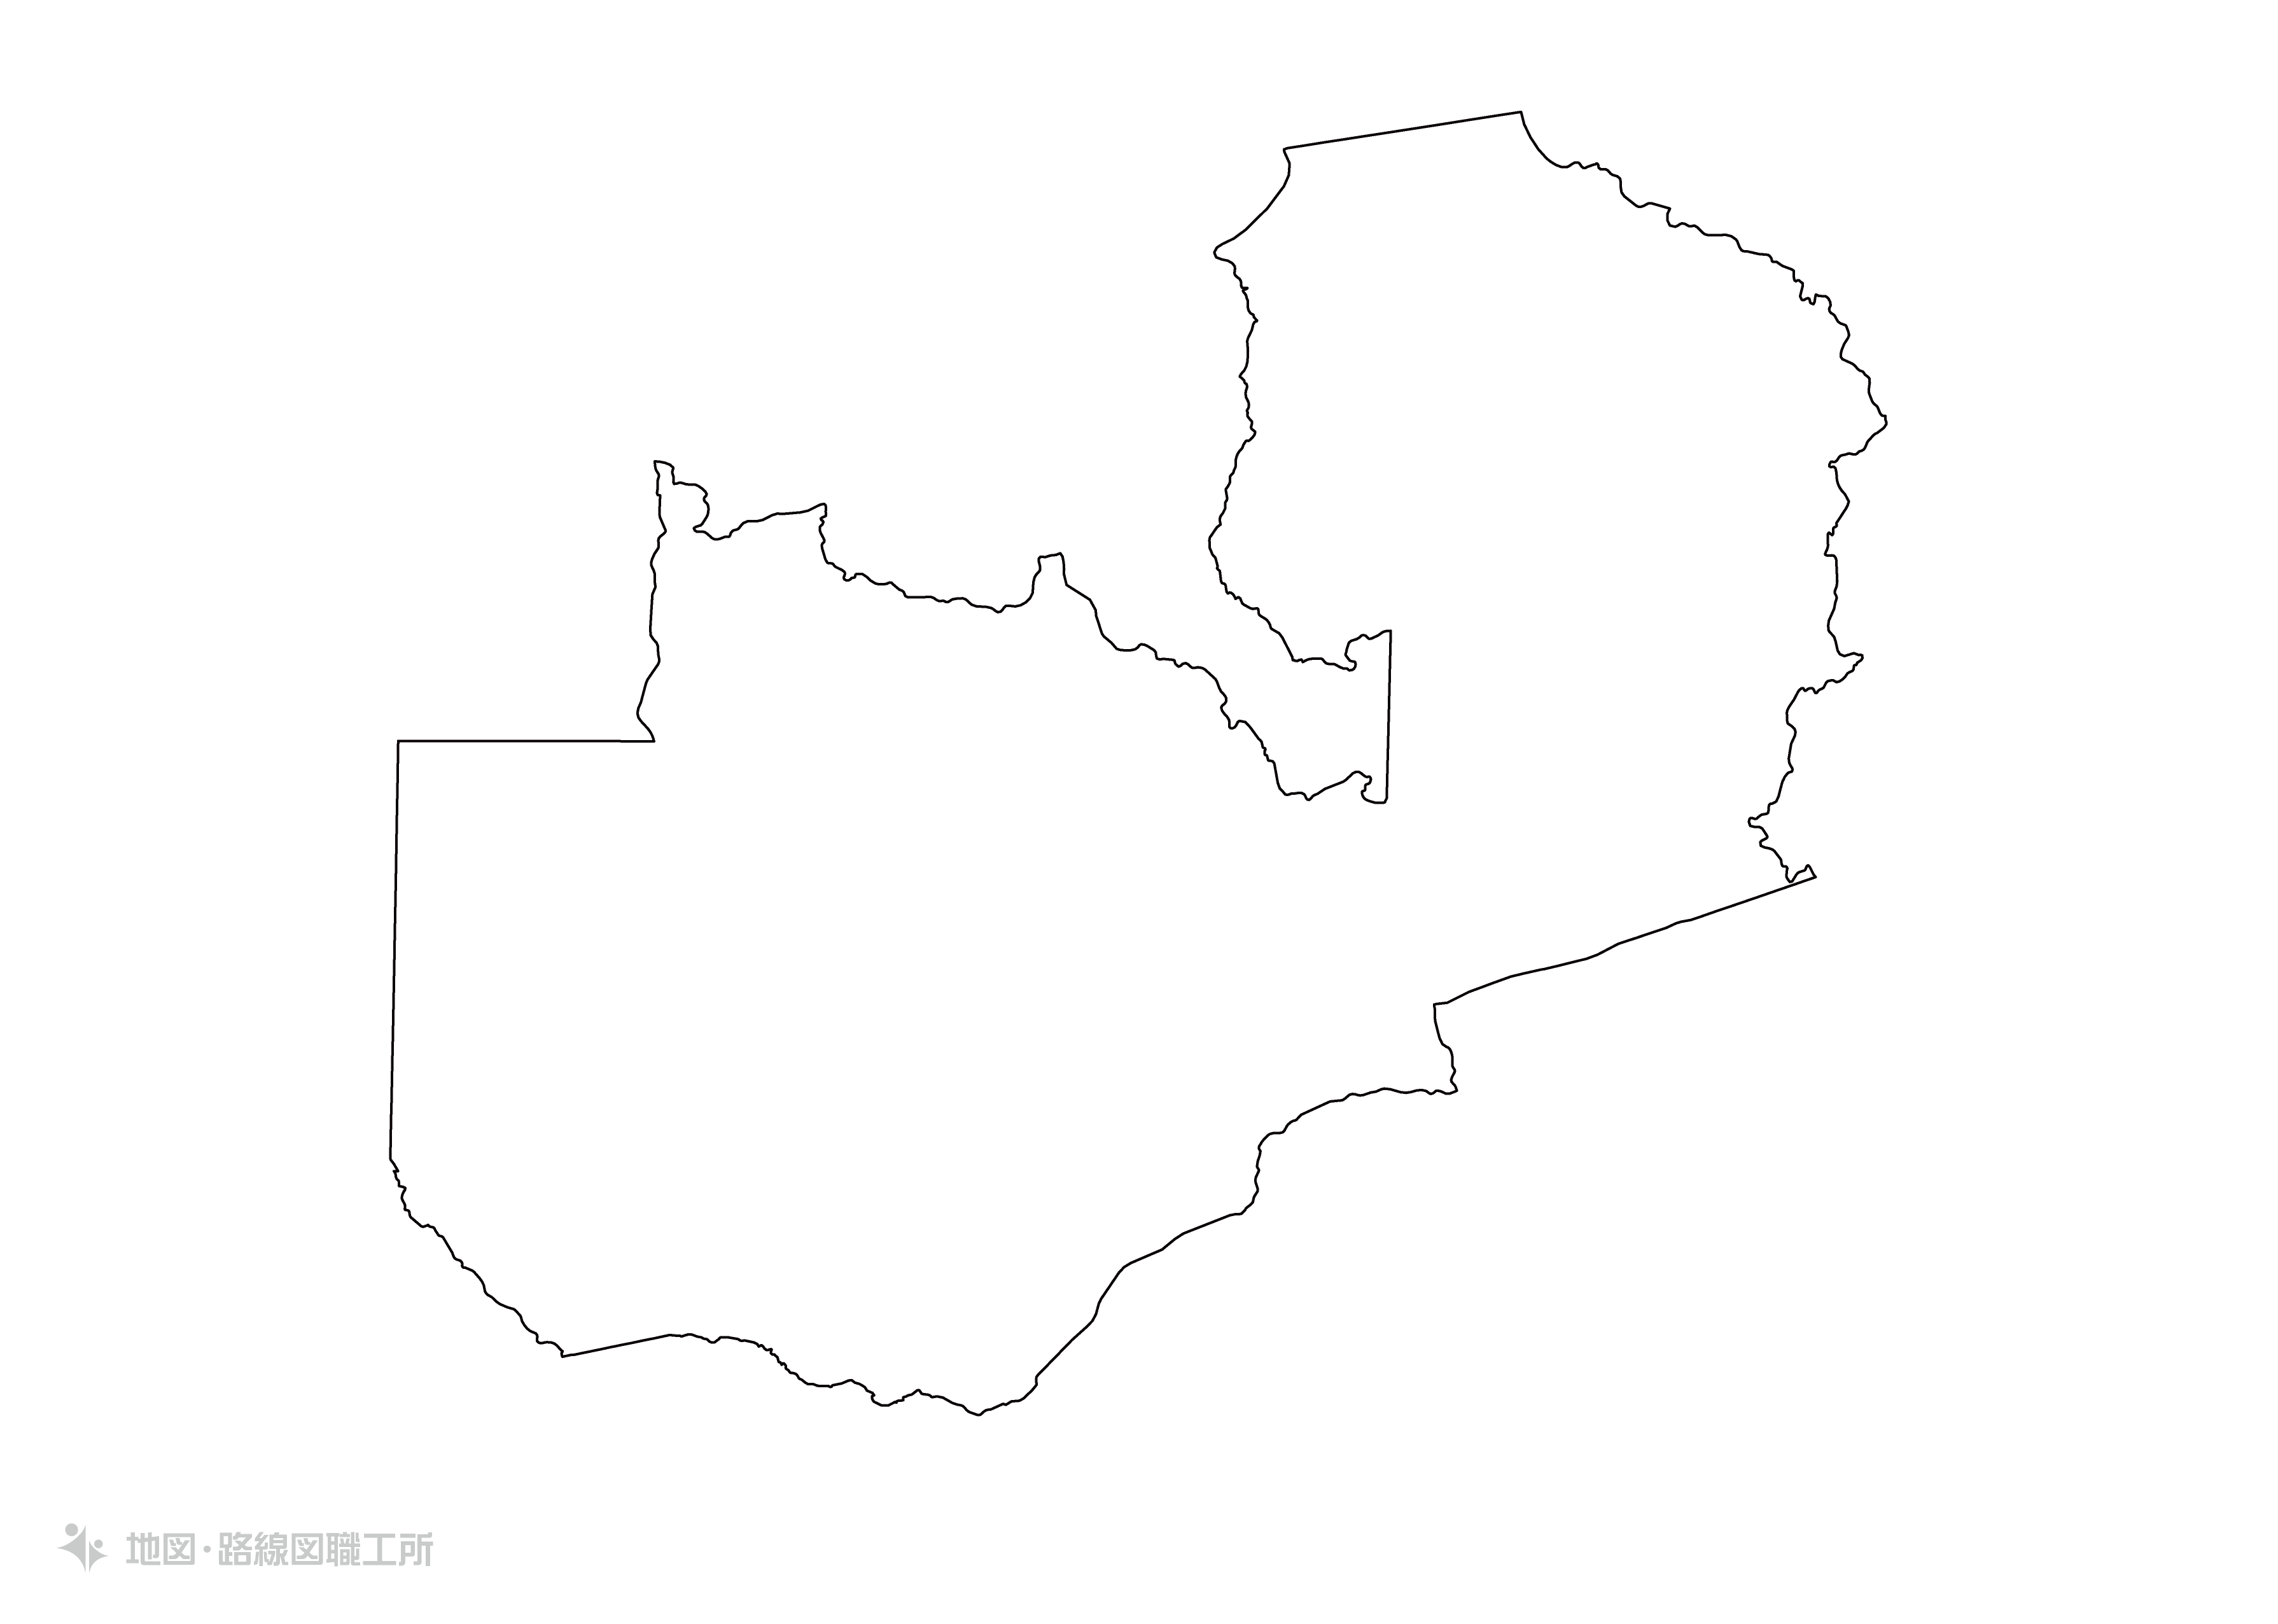 世界の白地図 ザンビア共和国 republic-of-zambia map